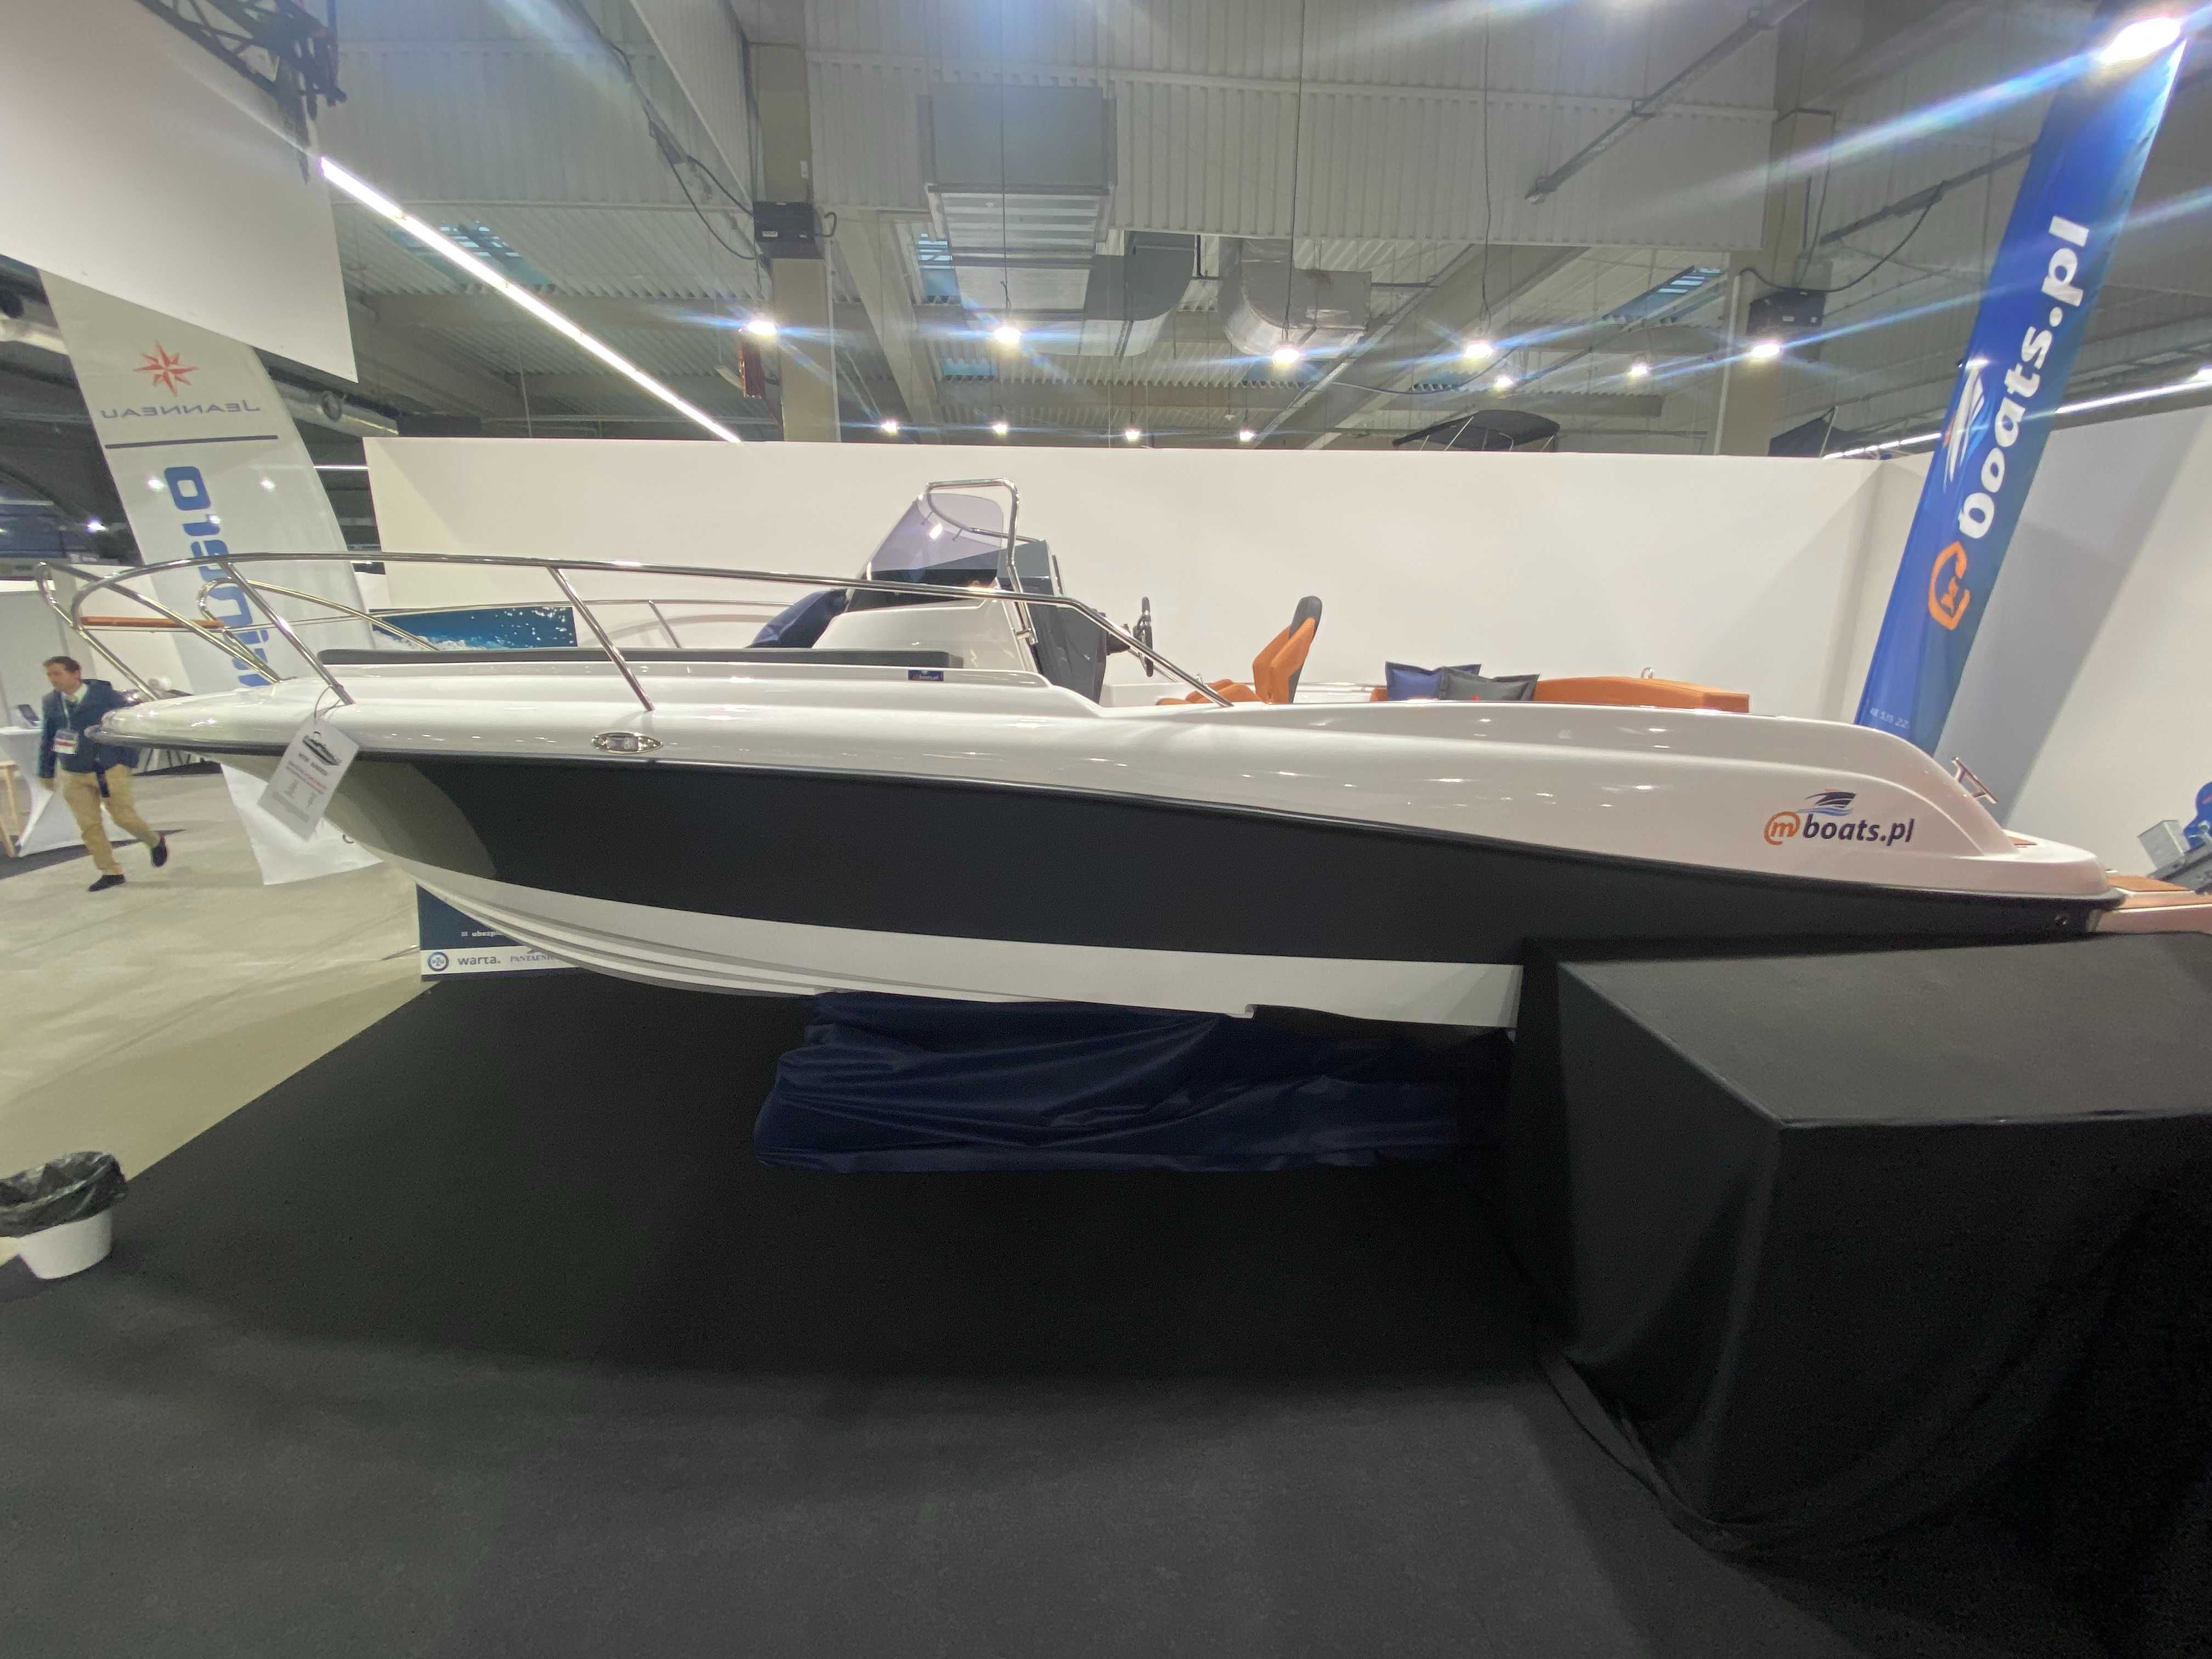 M750 Sundeck mboats.pl łódź motorowa, motorówka, jacht